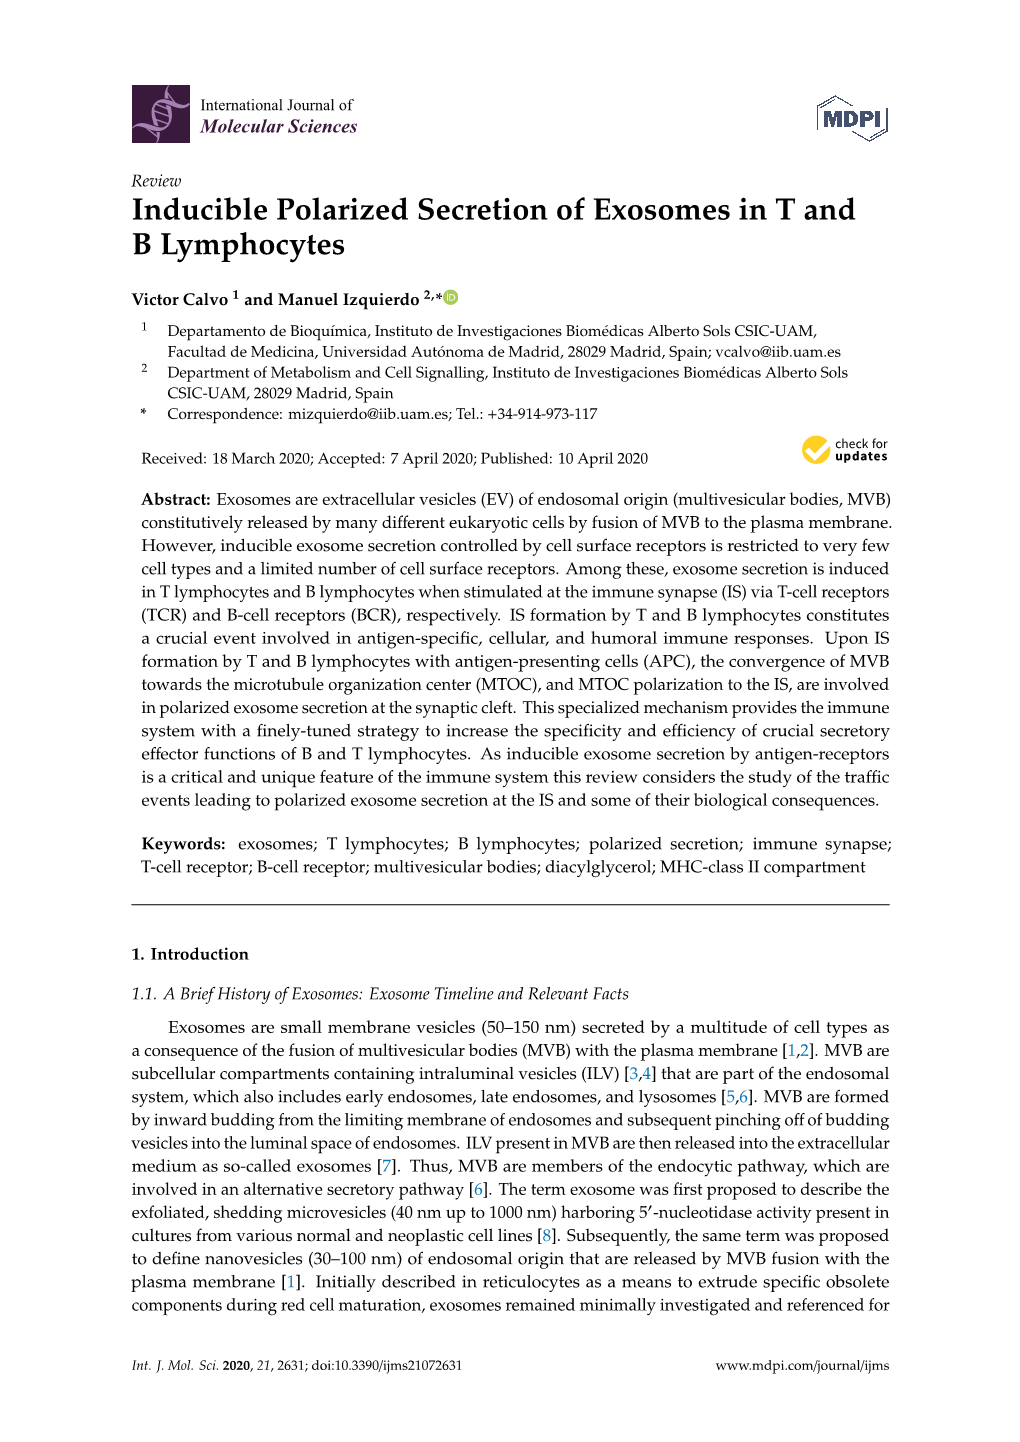 Inducible Polarized Secretion of Exosomes in T and B Lymphocytes